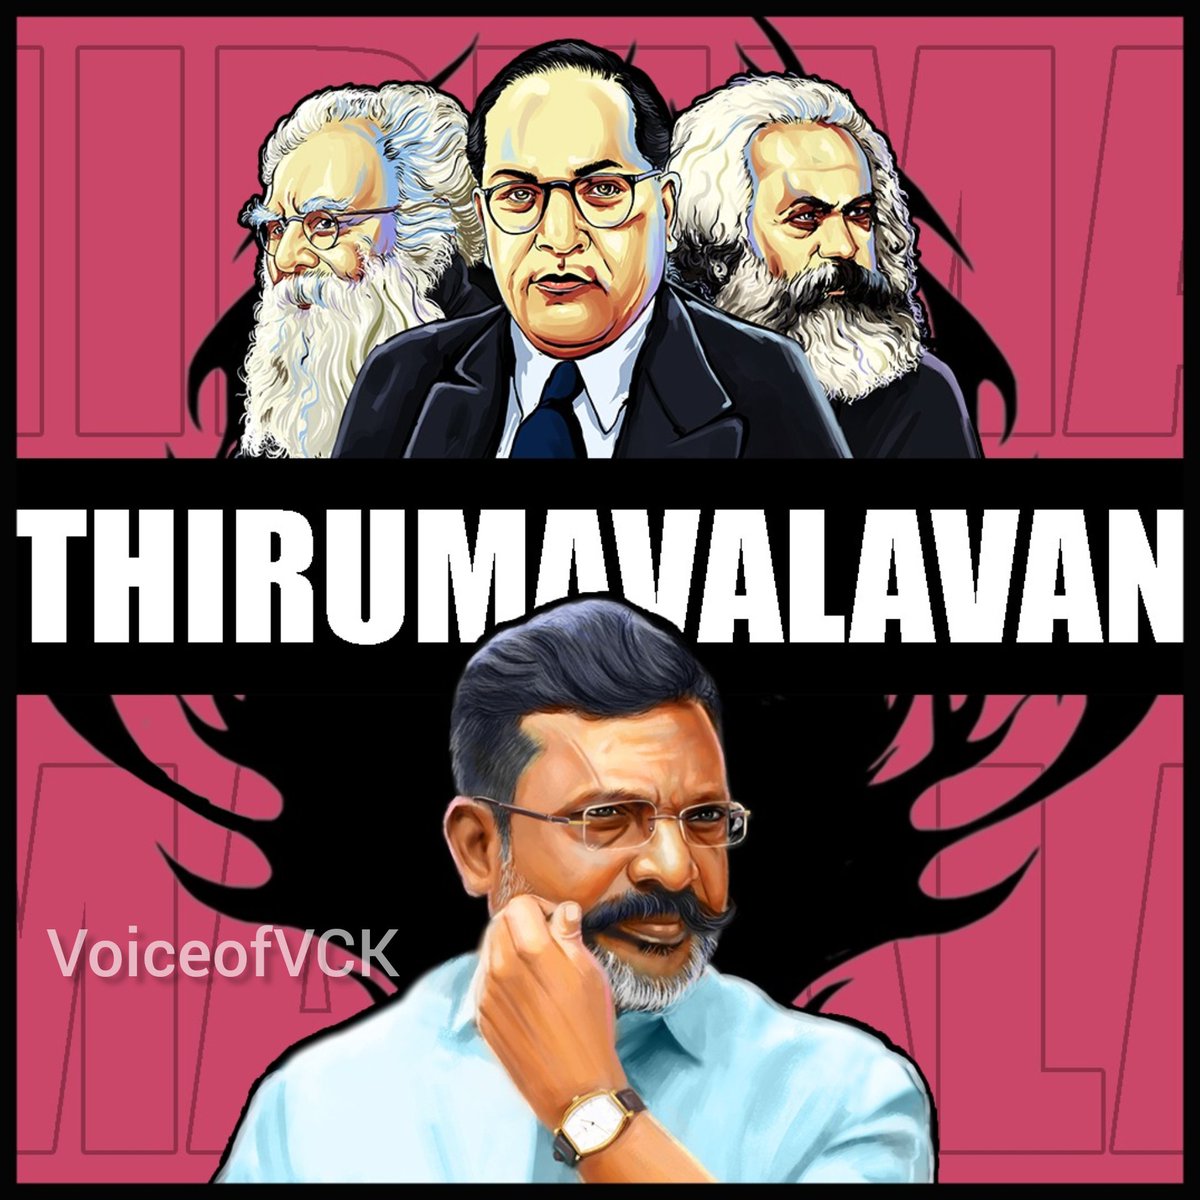 அங்கனூர் அம்பேத்கர் 💙❤️

#thirumaannan  #வெல்லும்சனநாயகம்மாநாடு #engalannan #makkalselvan #viduthalaichiruthaigalkatchi #thirumafan #vck #tamilnadu #india #indianpolitics